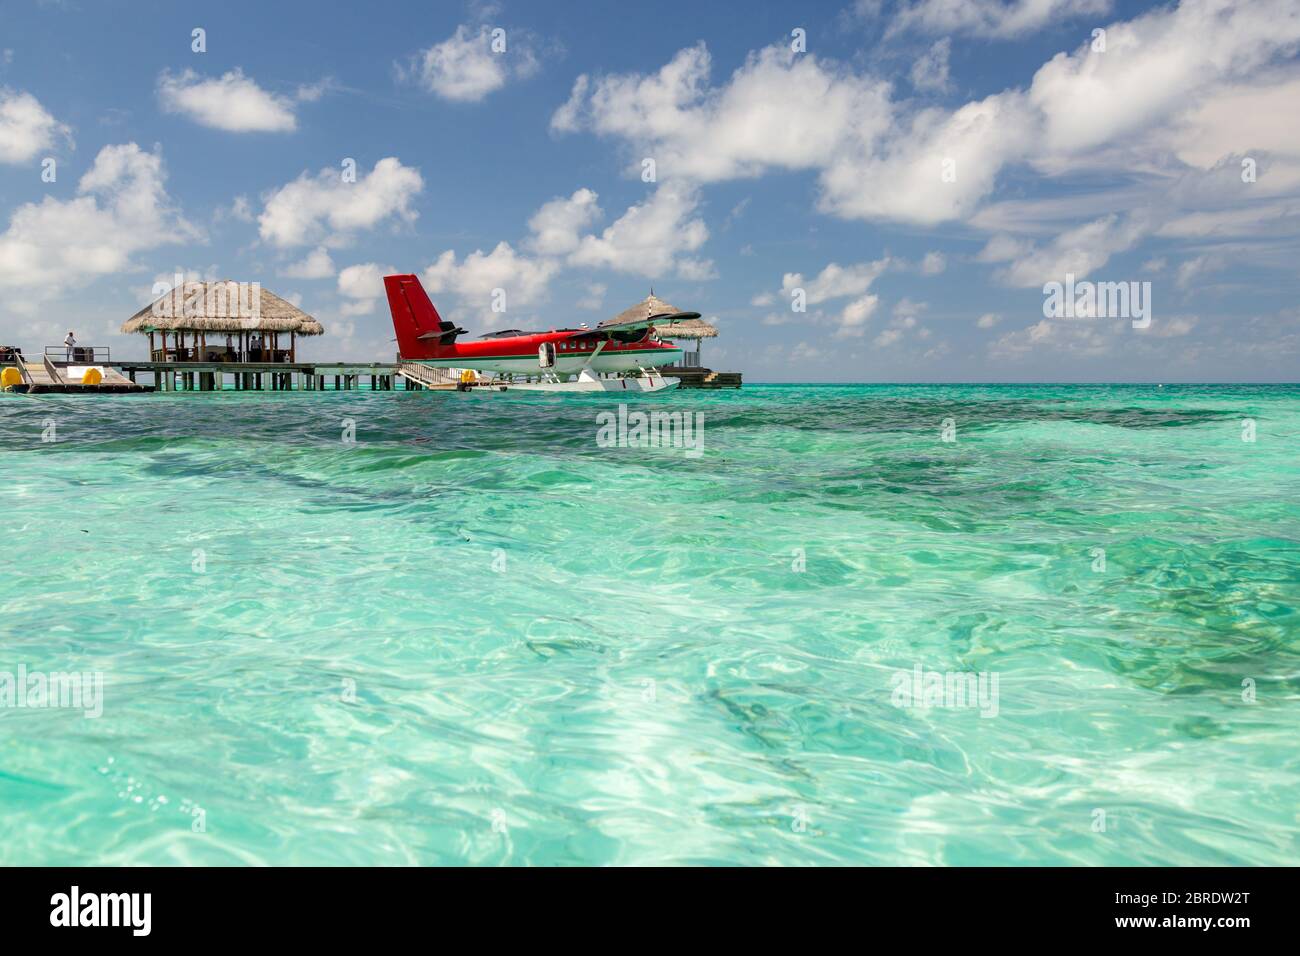 Wasserflugzeug auf den Malediven. Wunderschöne blaue Lagune, mit rotem Wasserflugzeug. Luxus Reise und Sommerurlaub Konzept Stockfoto